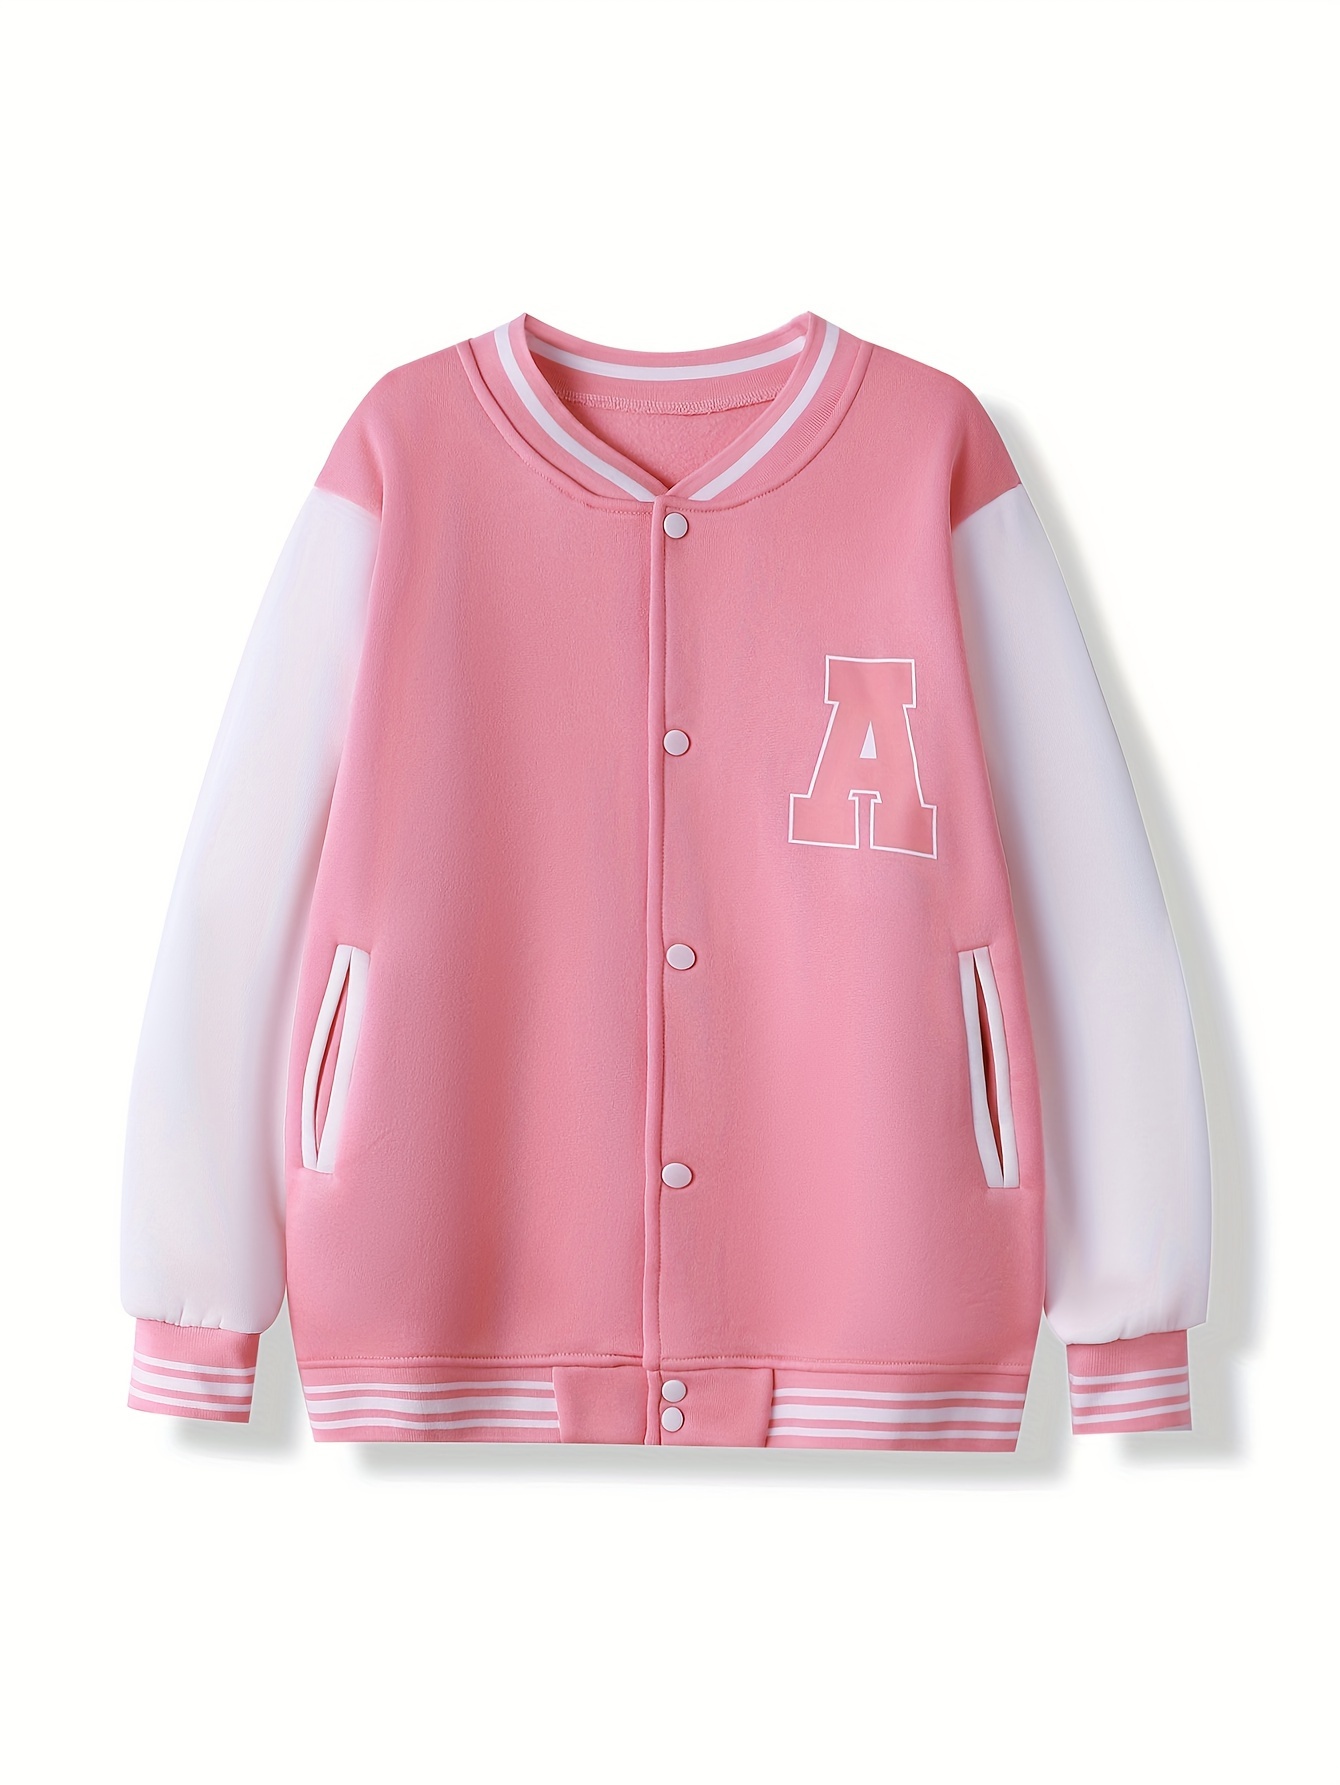 Pink Letterman's Jacket